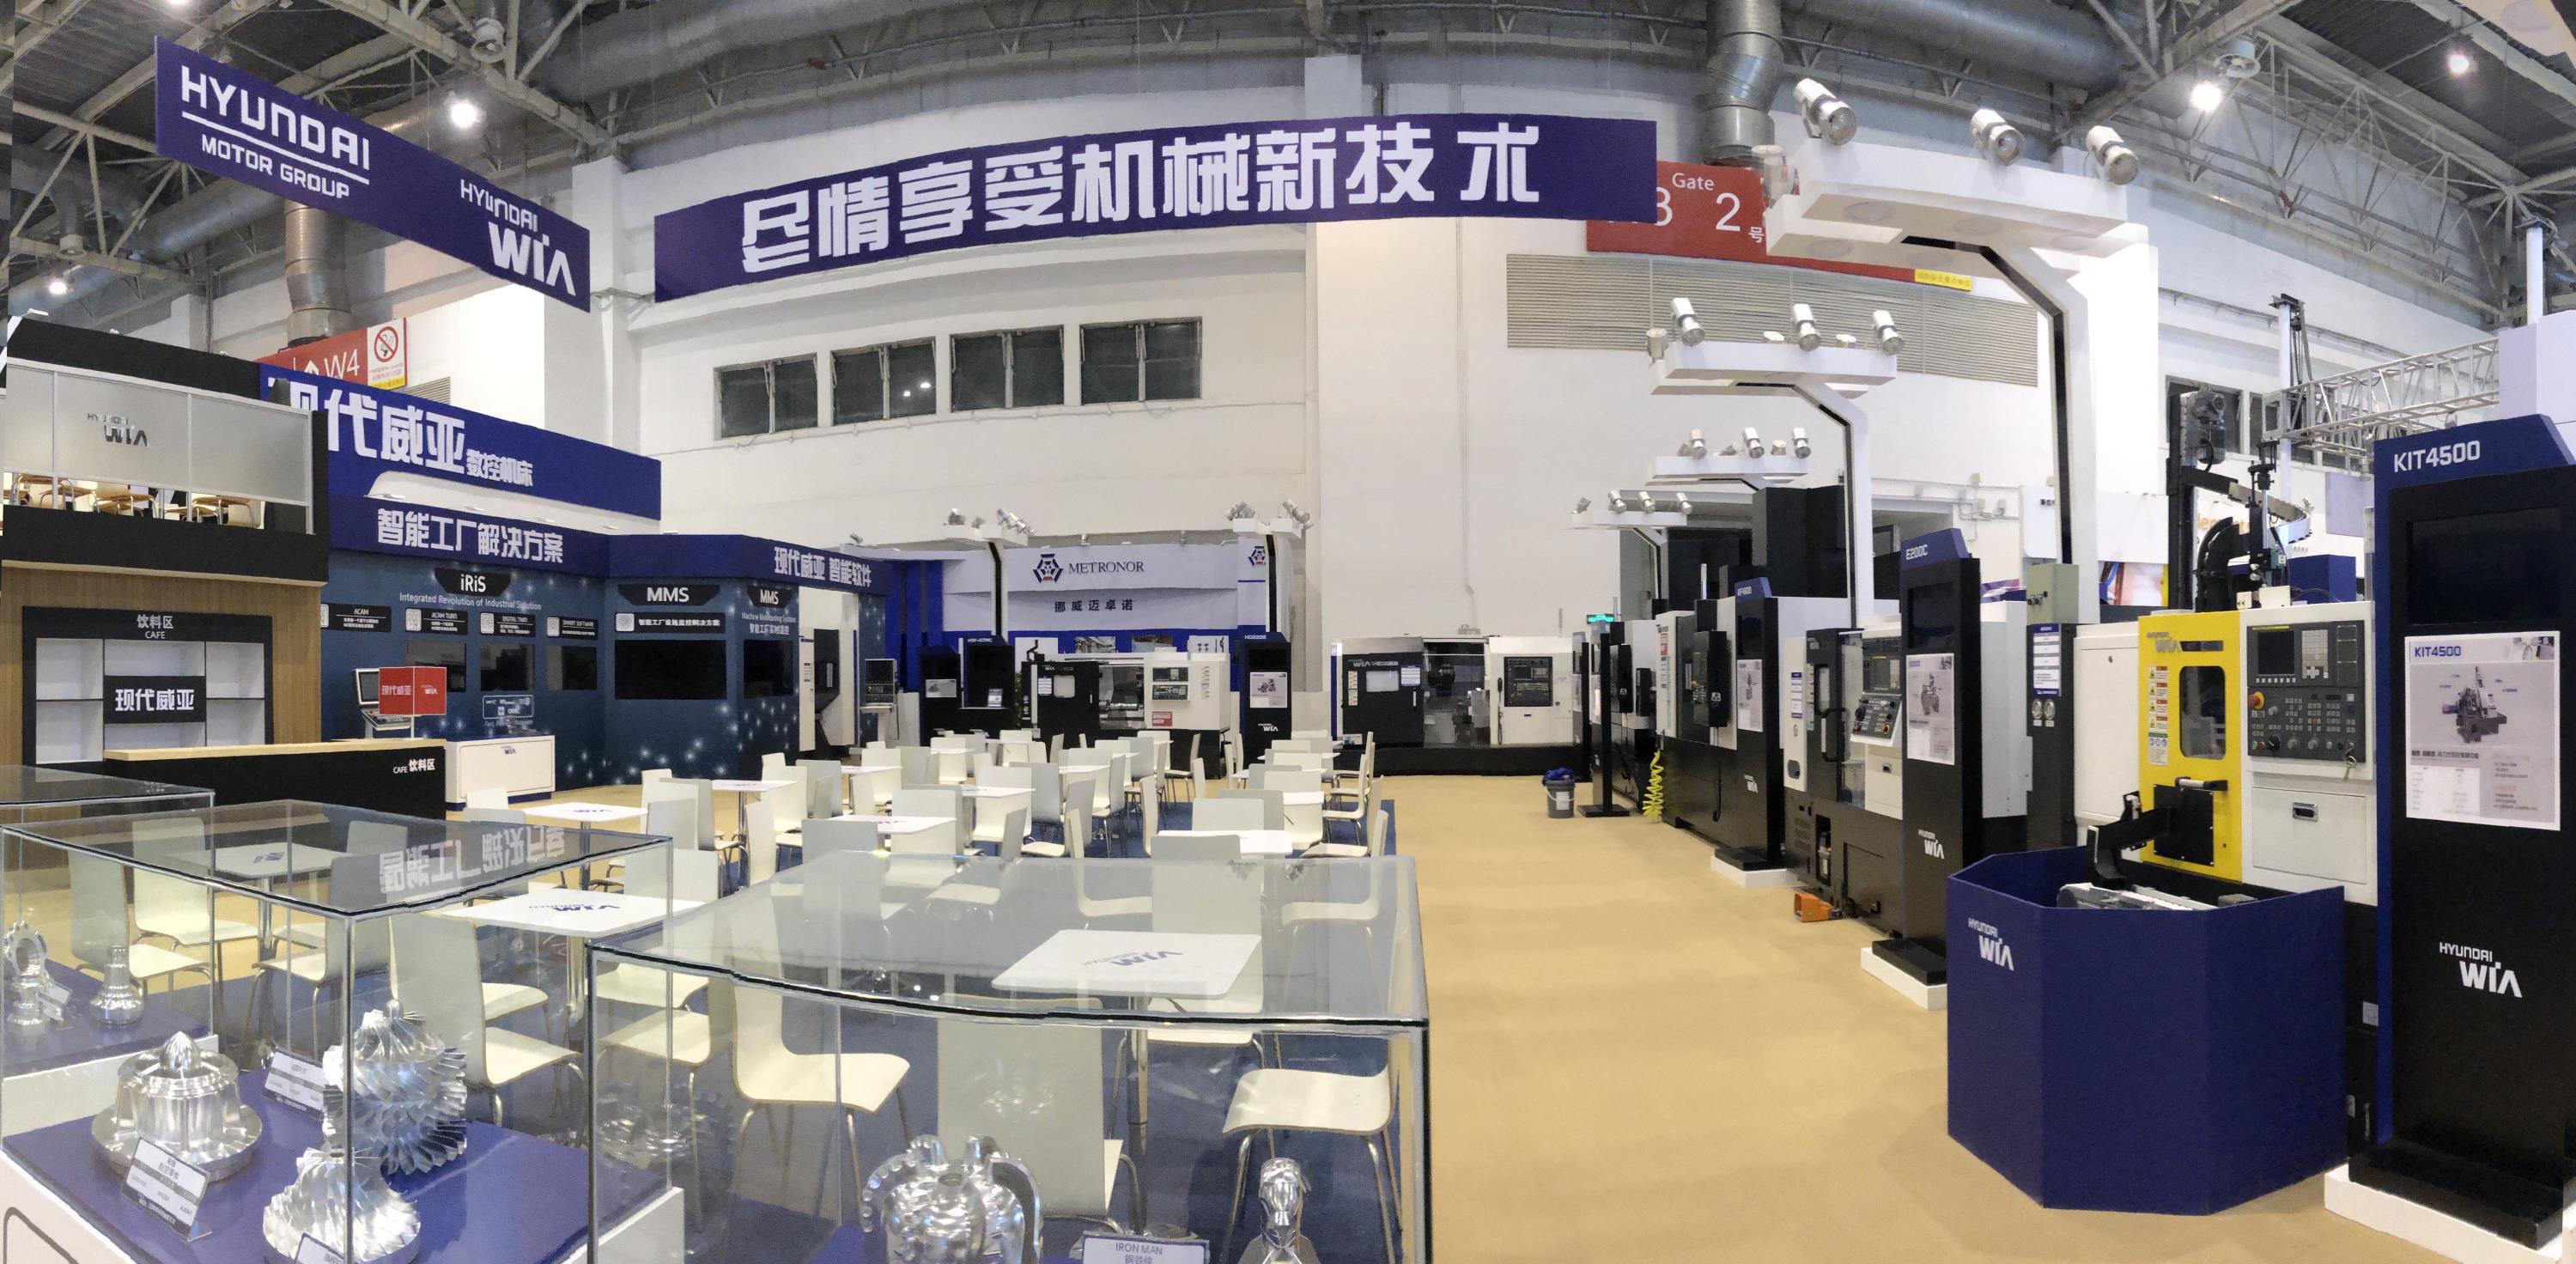 15일부터 20일까지 중국 북경 국제전시센터(CIEC)에서 열리는 국제 공작기계전시회 ‘CIMT 2019’에 참가한 현대위아 전시장, 현대위아는 이번 전시회에서 중국 현지 생산 모델인 KF5608 등 총 8종의 공작기계를 전시한다.